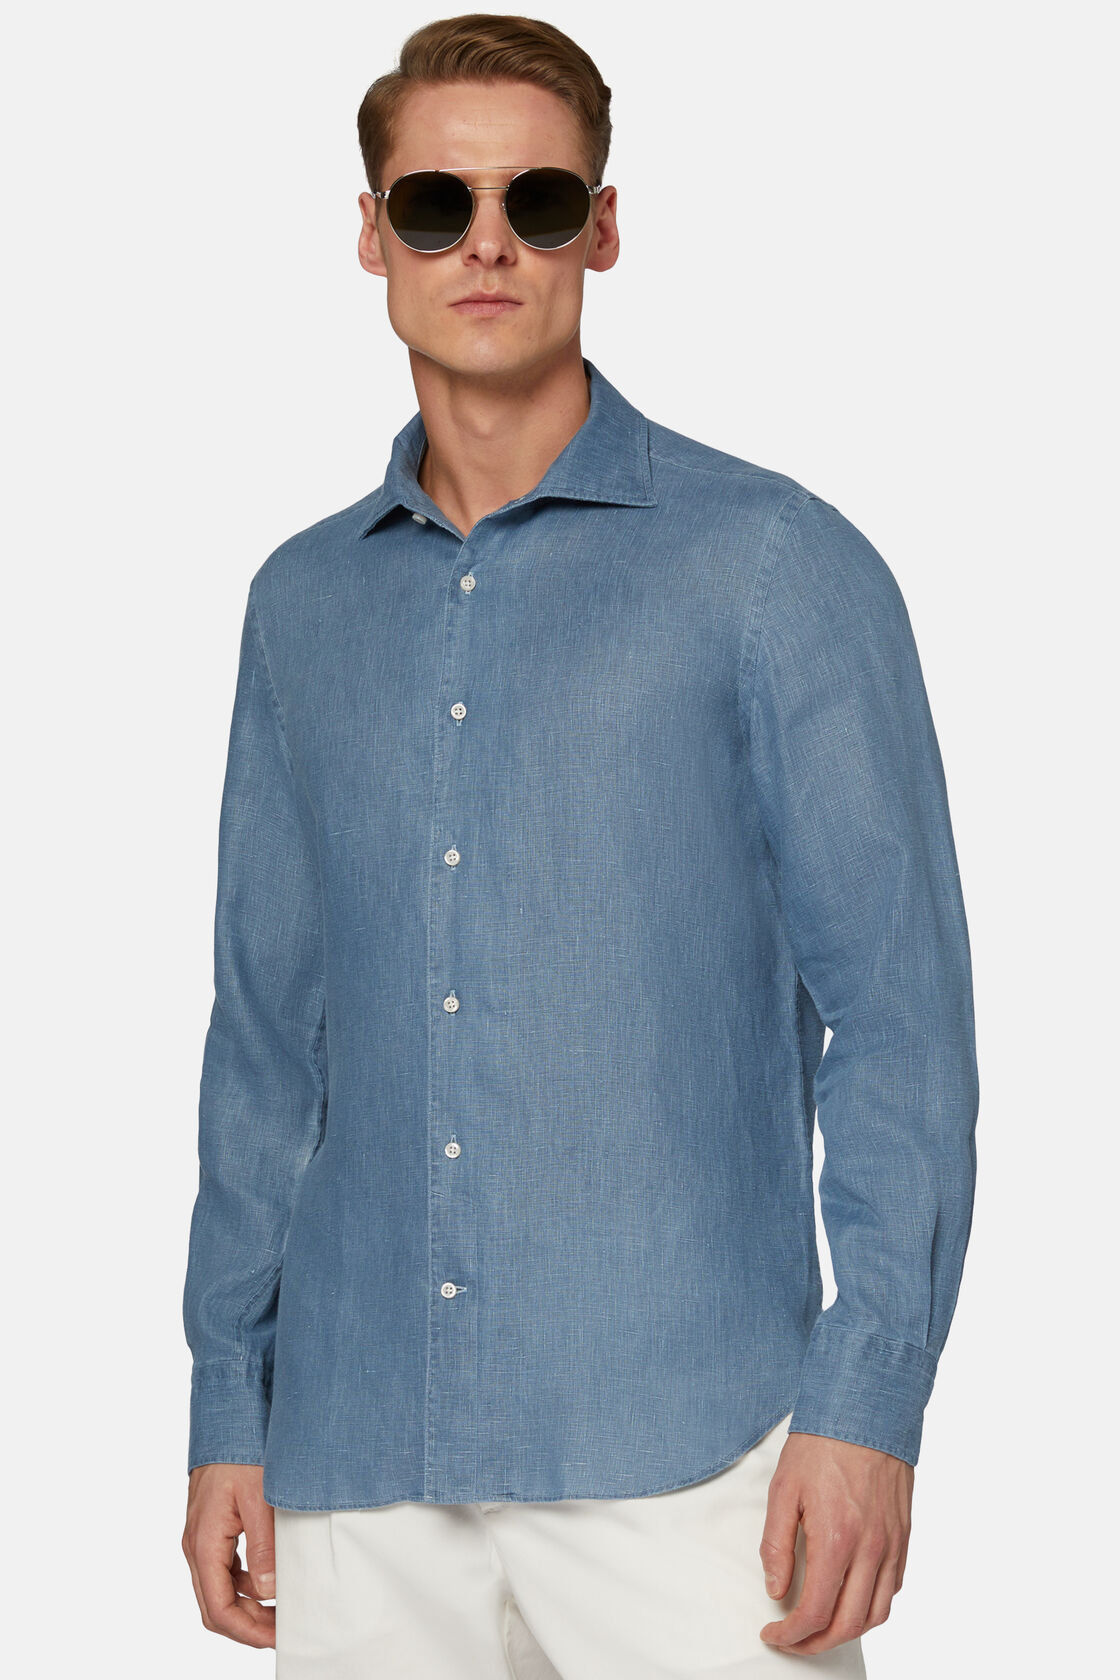 Λινό πουκάμισο κανονικής εφαρμογής σε χρώμα μπλε indigo, Indigo, hi-res